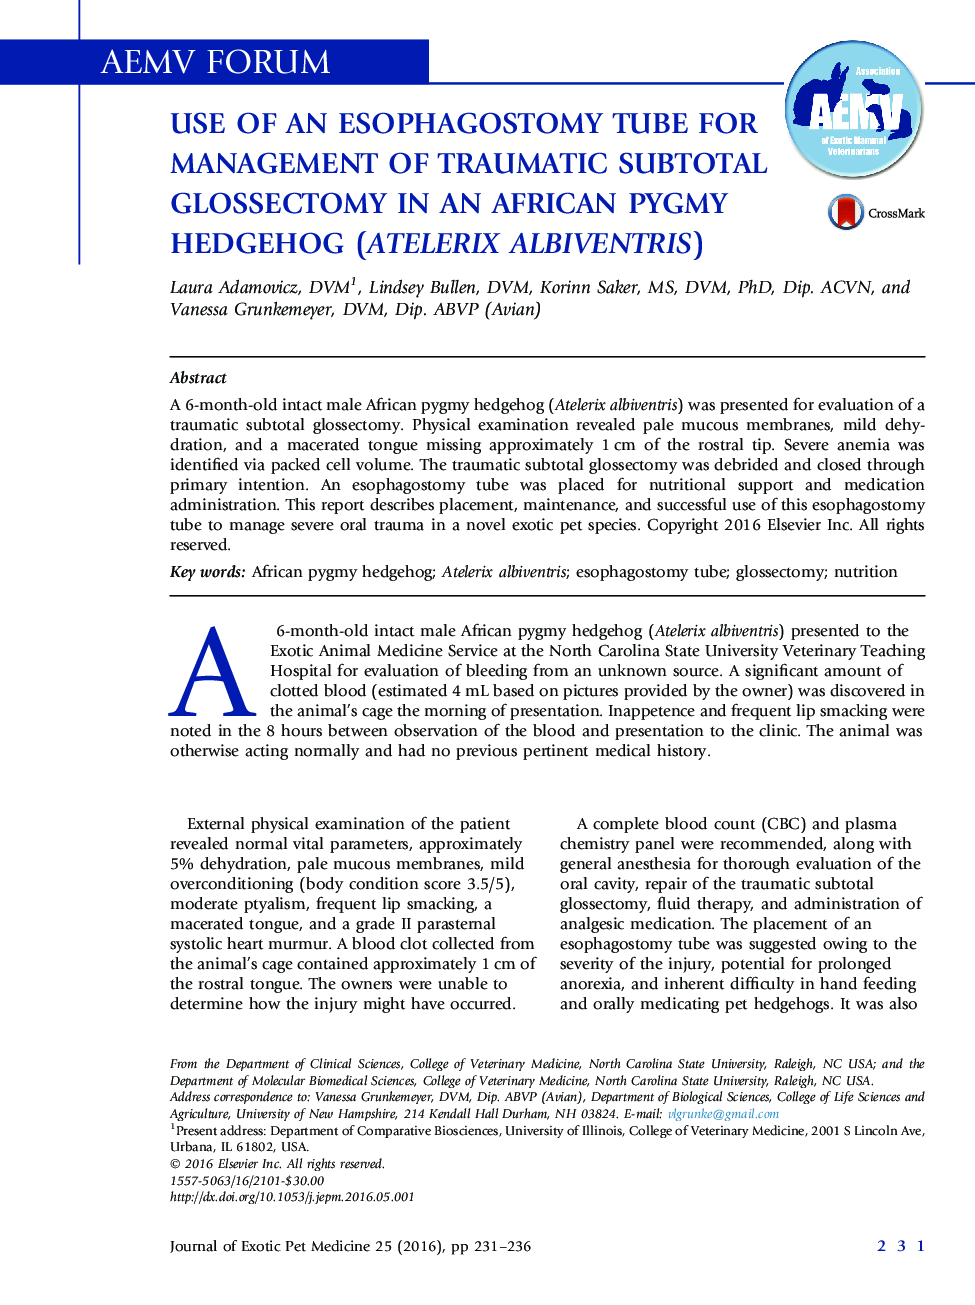 استفاده از یک لوله ازوفاگوستومی برای مدیریت گلوسکتومی ساب توتال ناشی از تروما در یک خارپشت کوتوله آفریقایی (جوجه‌تیغی‌های آفریقایی albiventris)